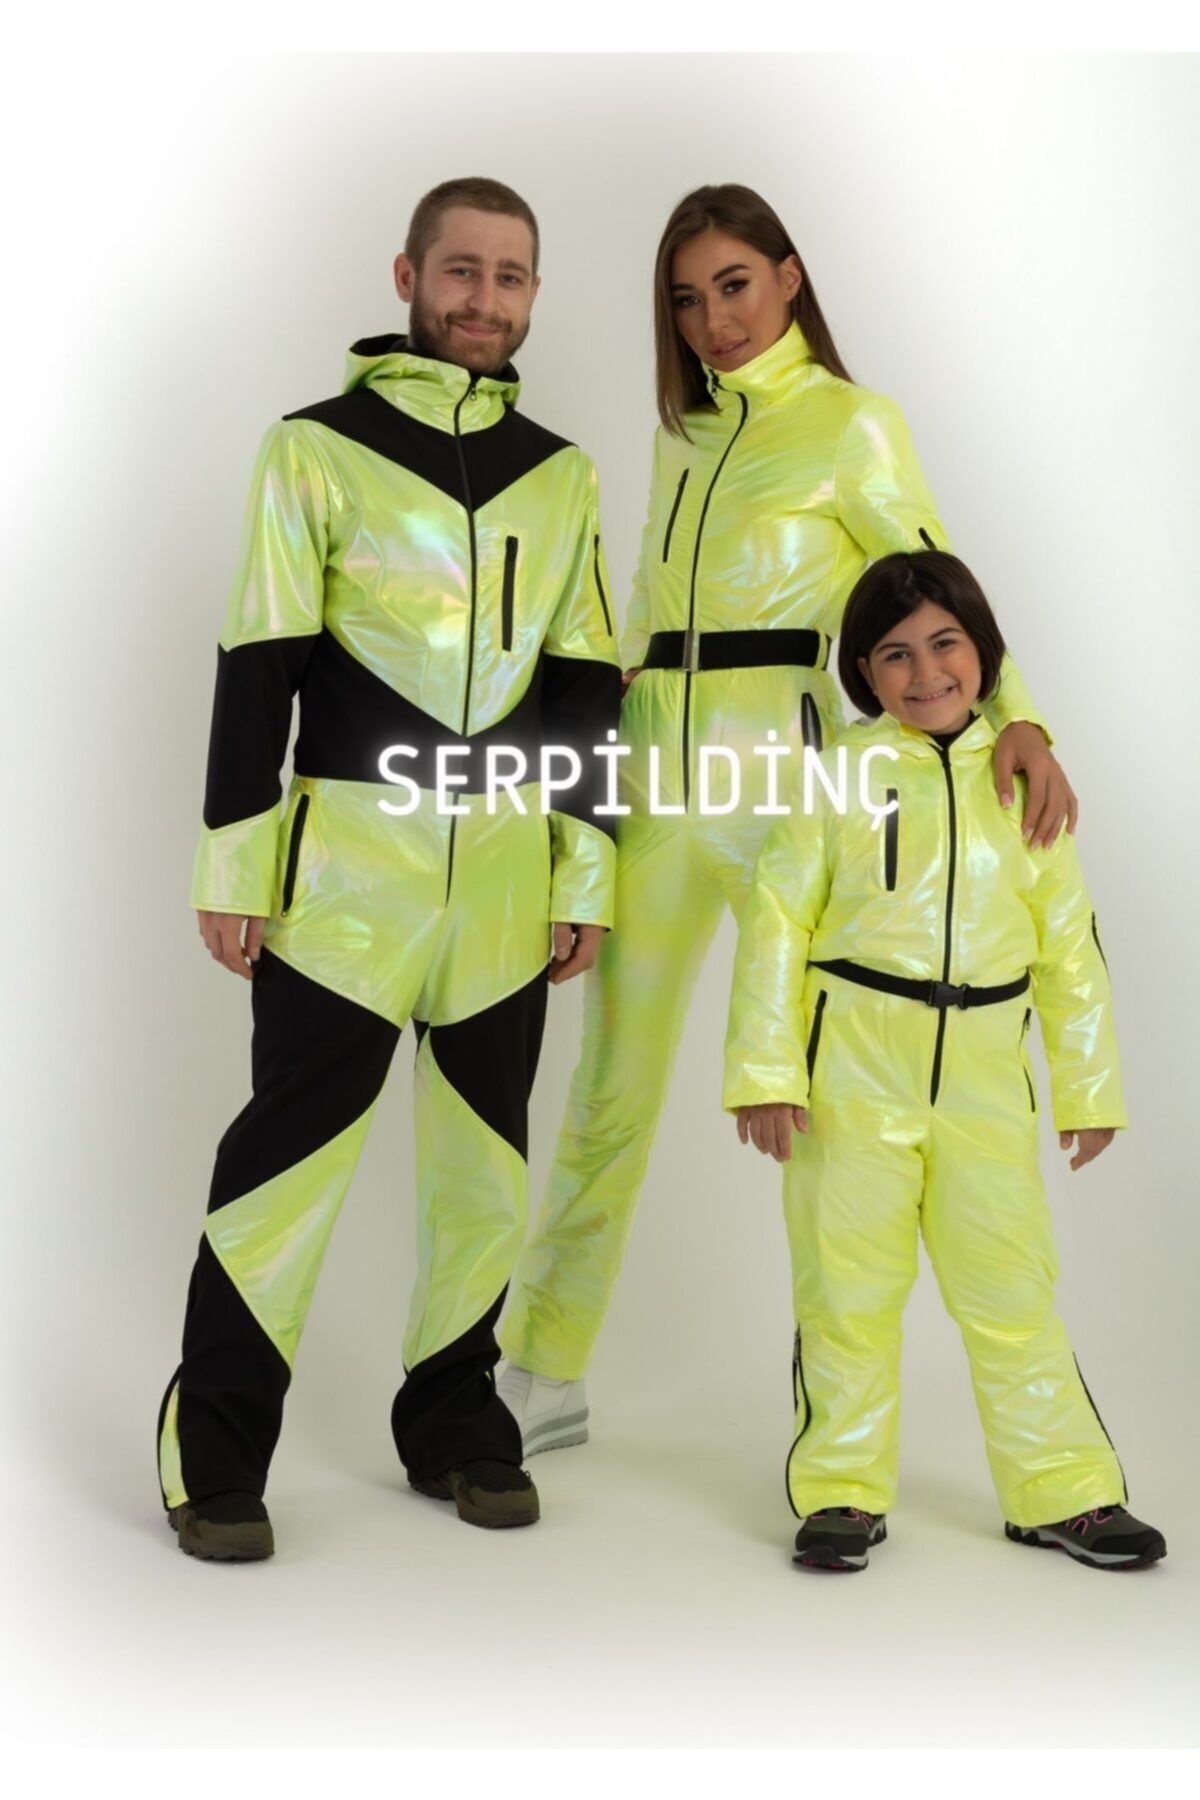 serpildinc Hologramlı Neon Sarı Aile Kombini Takım